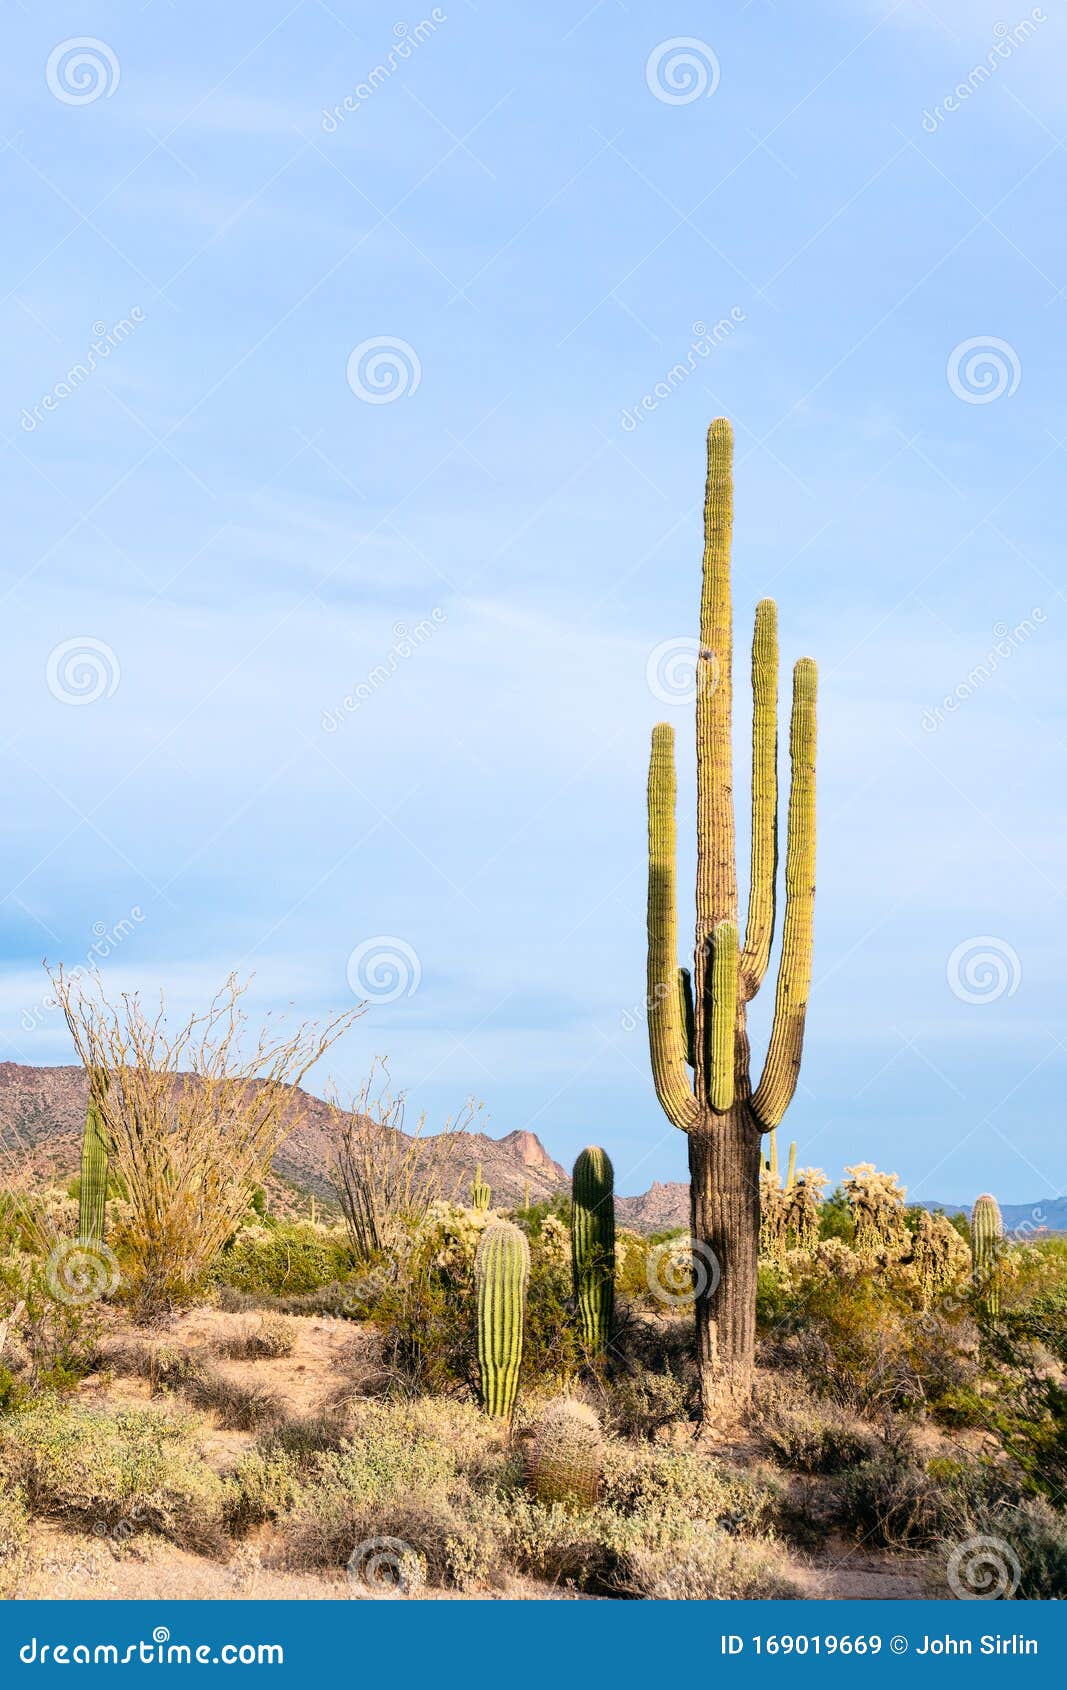 saguaro cactus and sonoran desert landscape